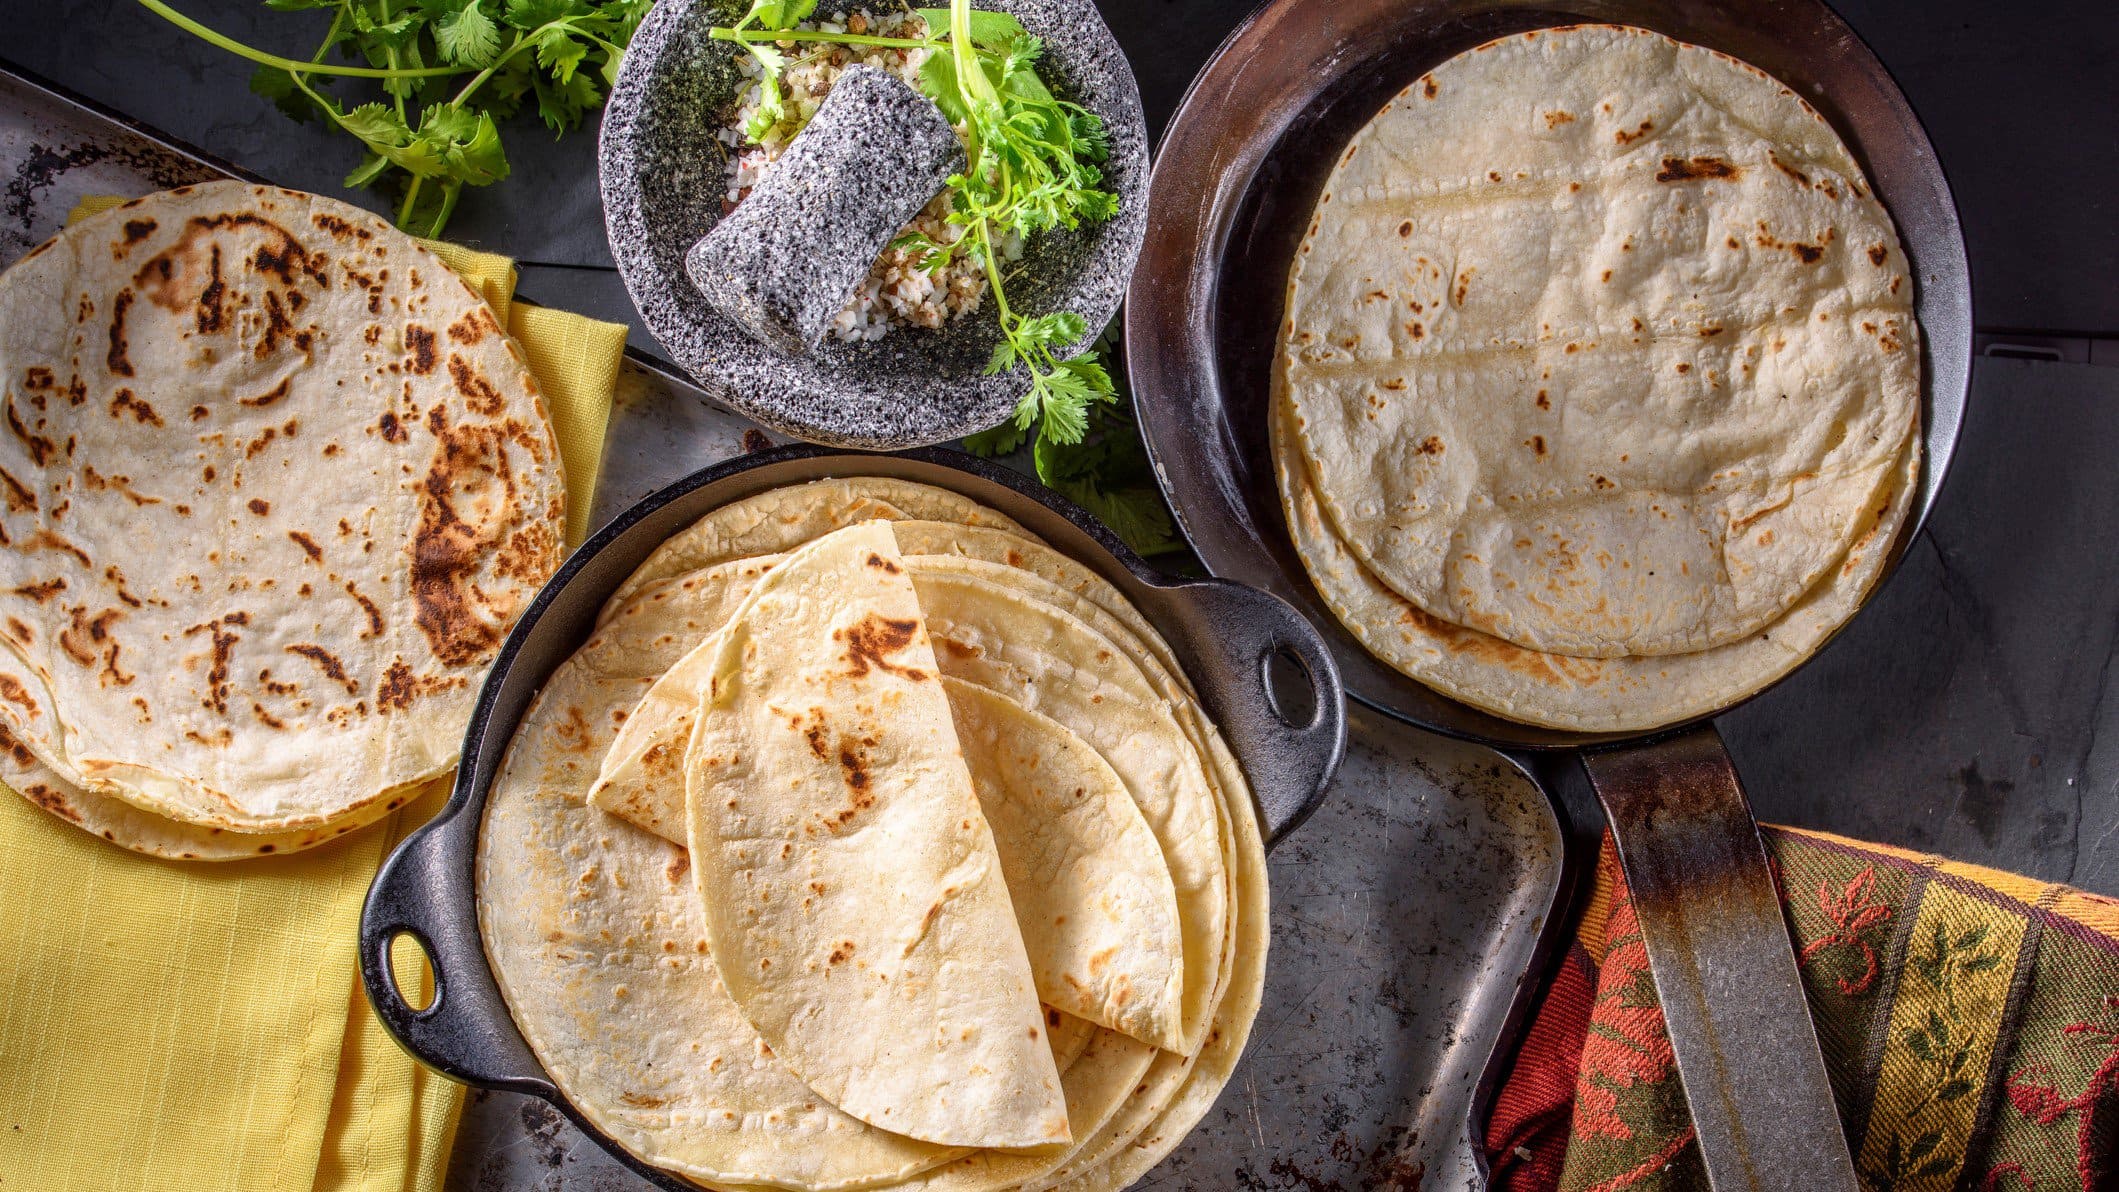 Tortillas aus Maismehl und aus Weizenmehl auf Tellern und in Pfannen verteilt. Im Bild Füllungen und Toppings. Links und rechts Tücher im mexikanischen Stil. Draufsicht.